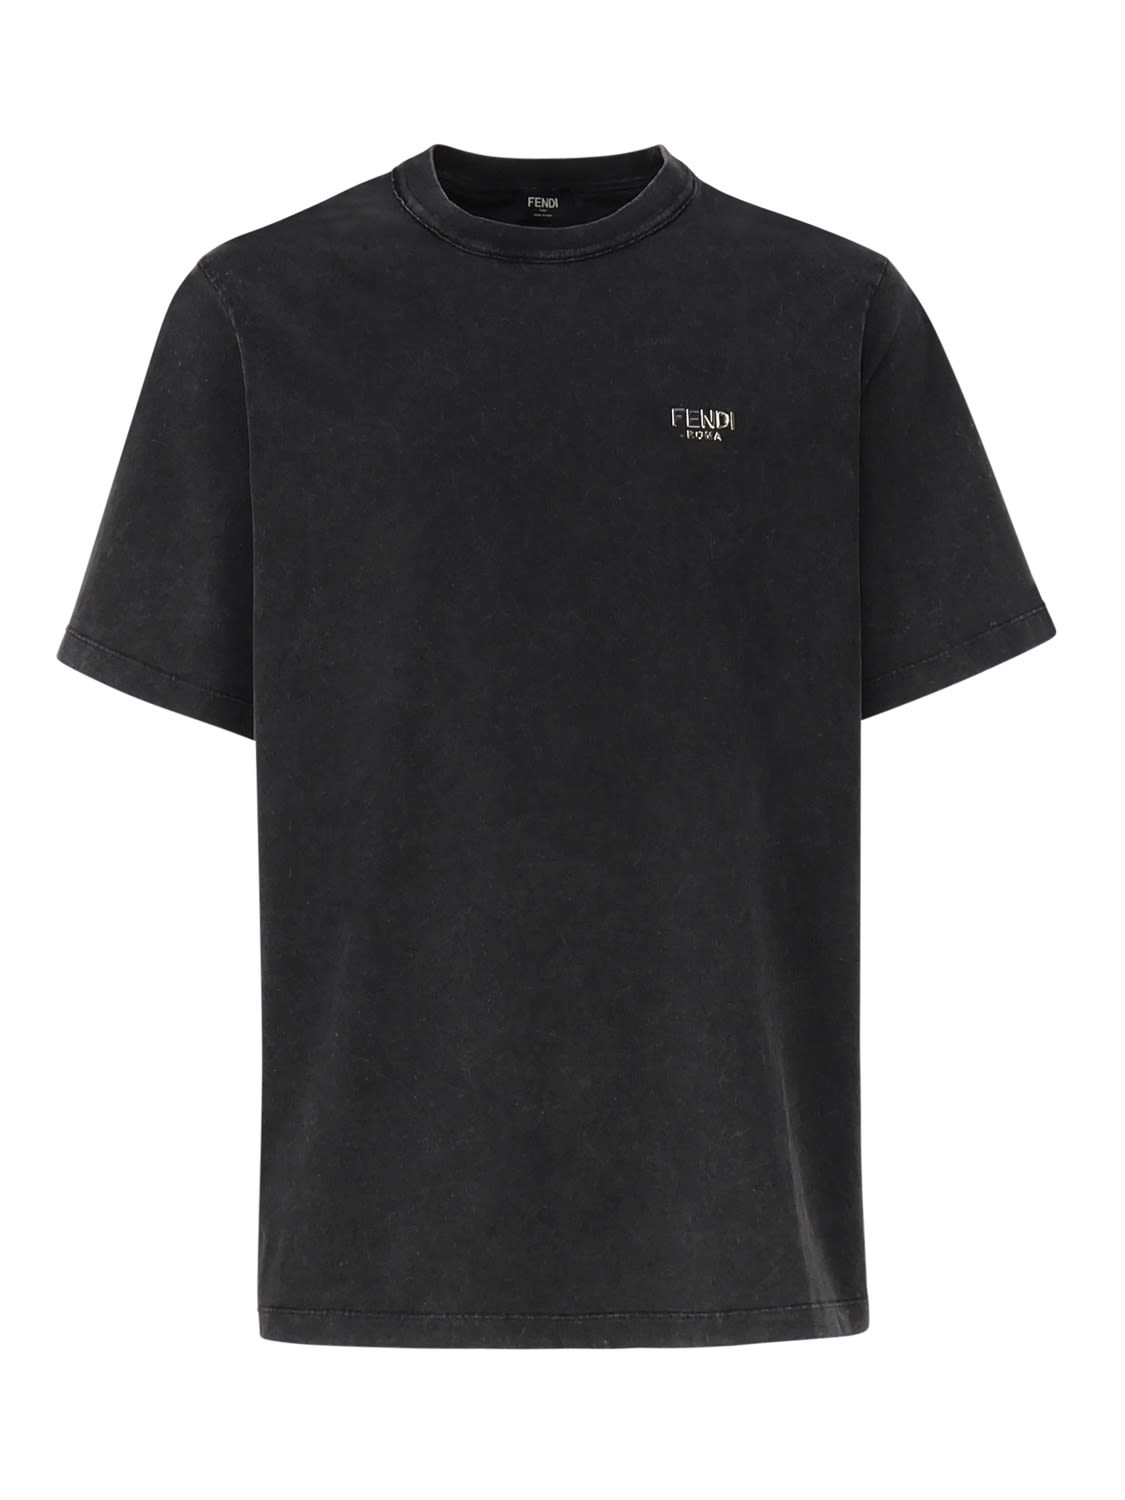 Fendi Jersey T-shirt In Black